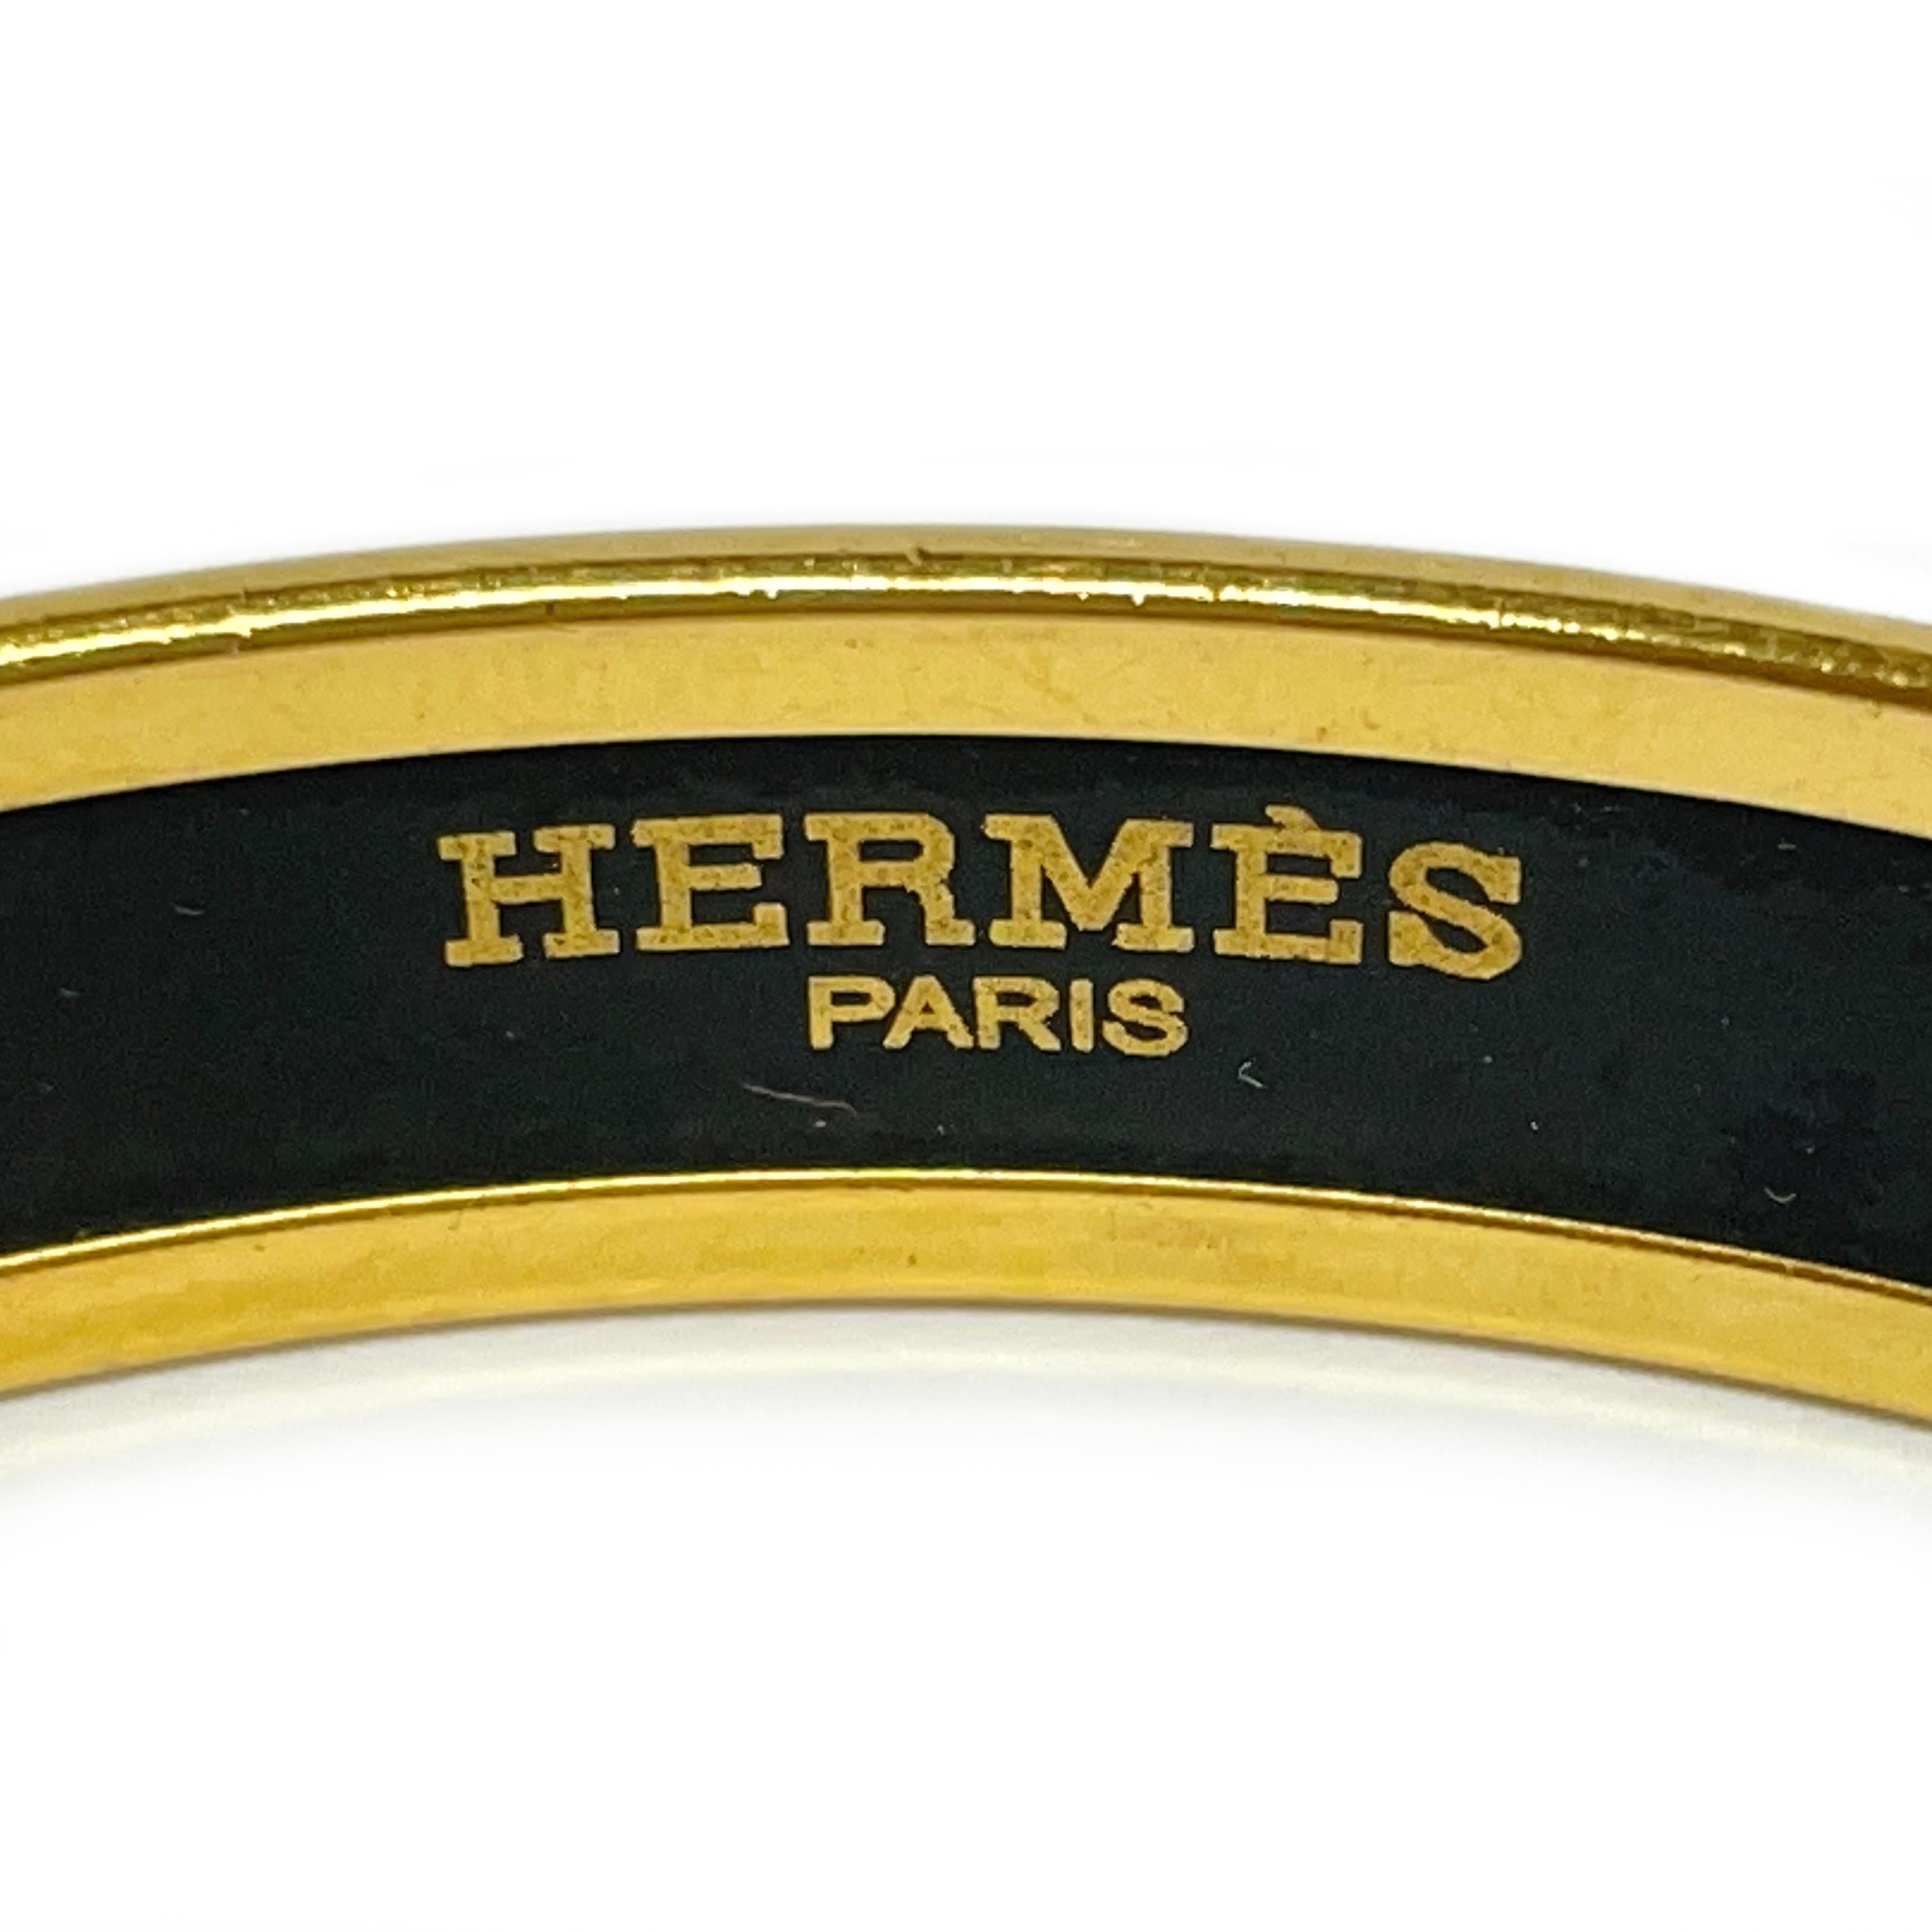 Hermes Fan Grand Alpala Cloisonne Emaille Schwarz und Gold plattiert Armreif Armband. Dieser schicke Armreif zeigt klassische Hermes-Motive: Seil, Quasten und Fleur de Lis. Der Armreif hat eine rundum glatte Oberfläche. Der Armreif ist 10,4 mm